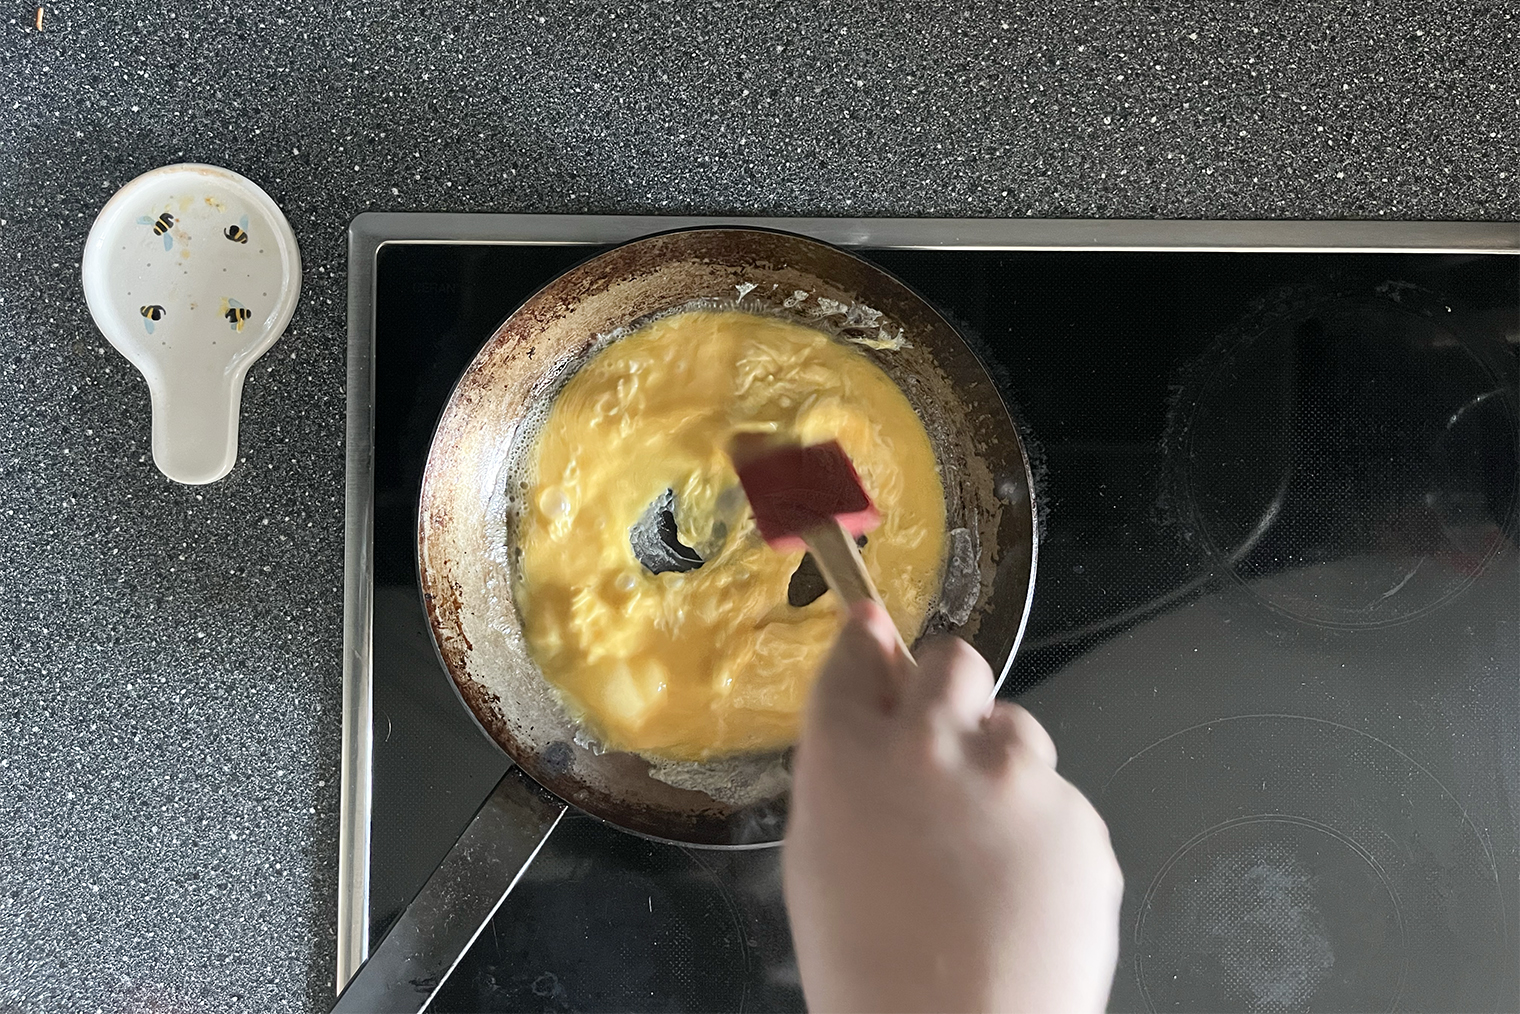 Практически сразу в сковороде начнут формироваться складки приготовленного яйца